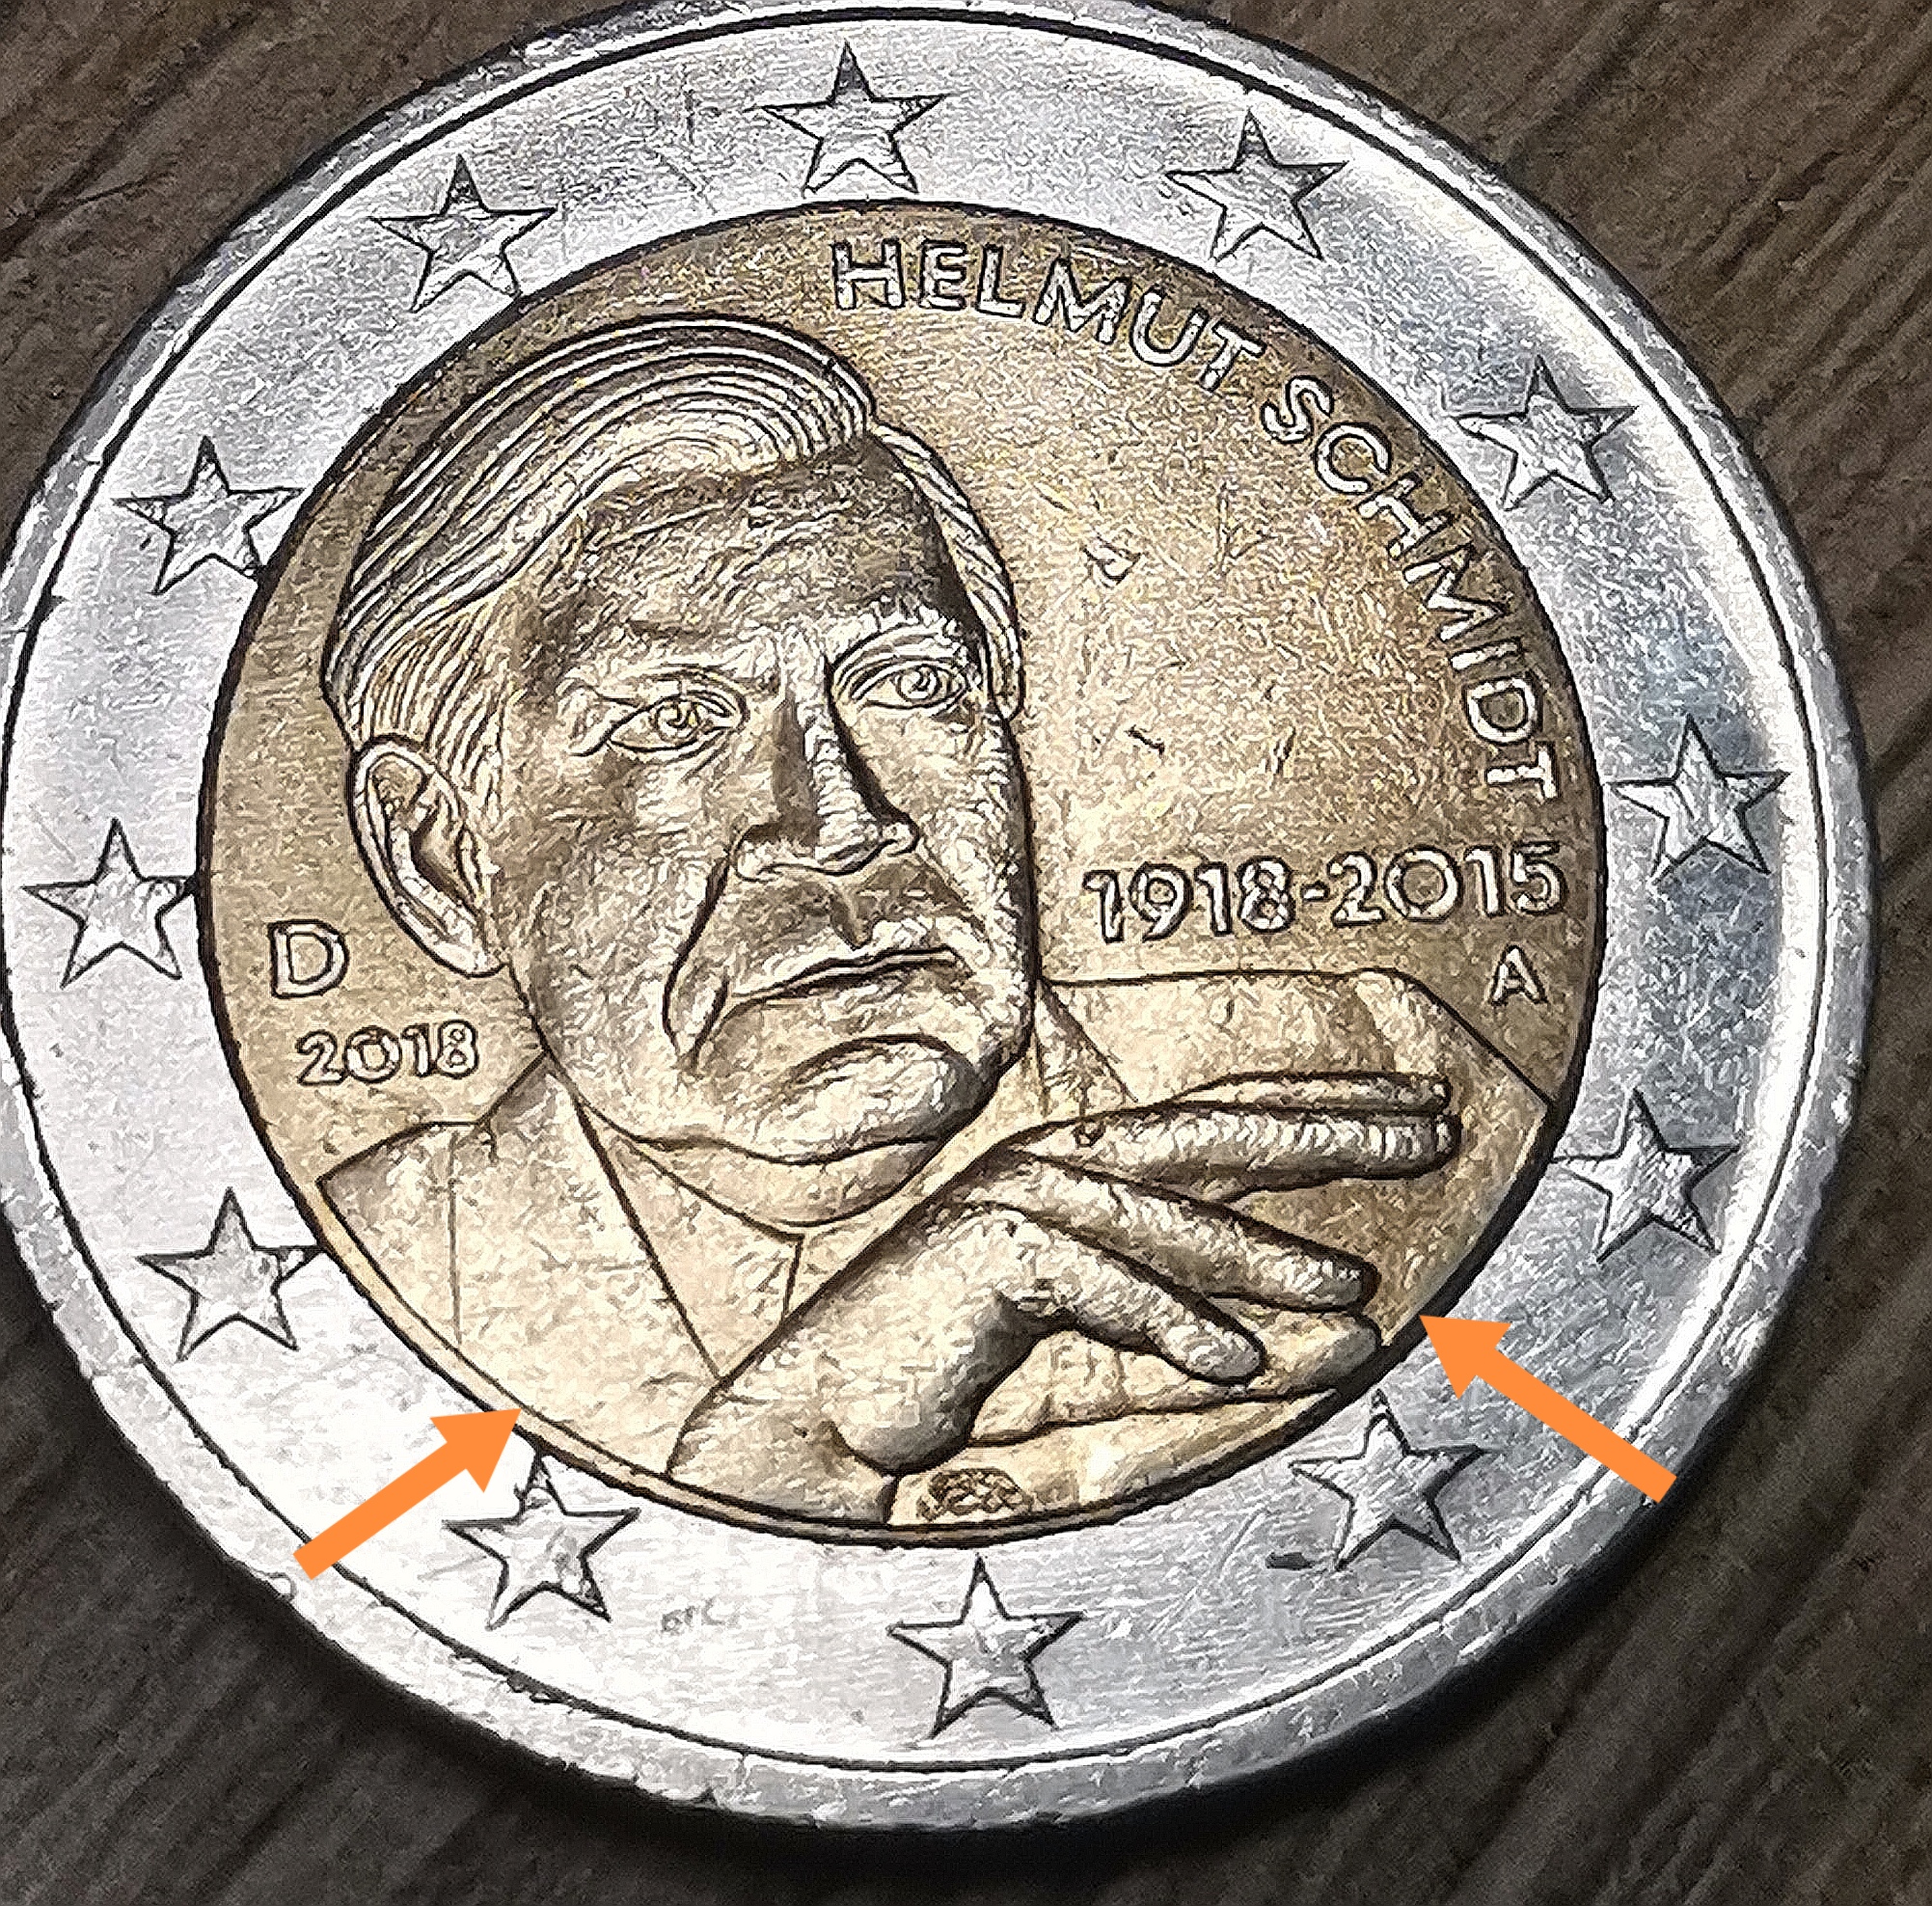 2 euro Gedenk münze Helmut Schmidt